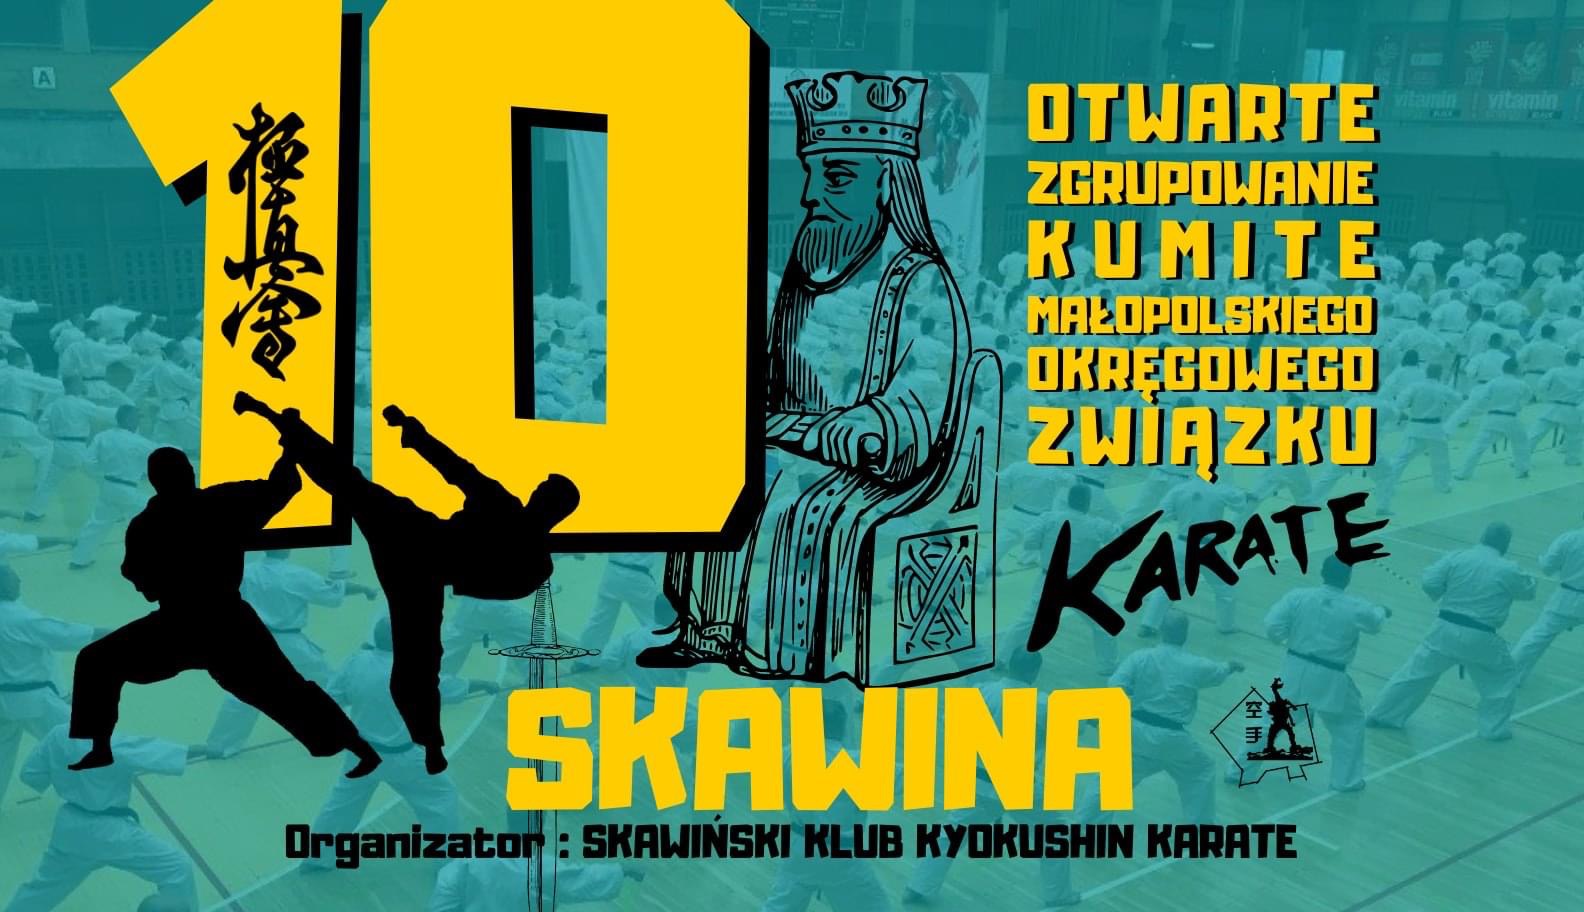 10. Otwarte Zgrupowanie KUMITE Małopolskiego Okręgowego Związku Karate. Skawina. Organizator: Skawiński Klub Kyokushin Karate.